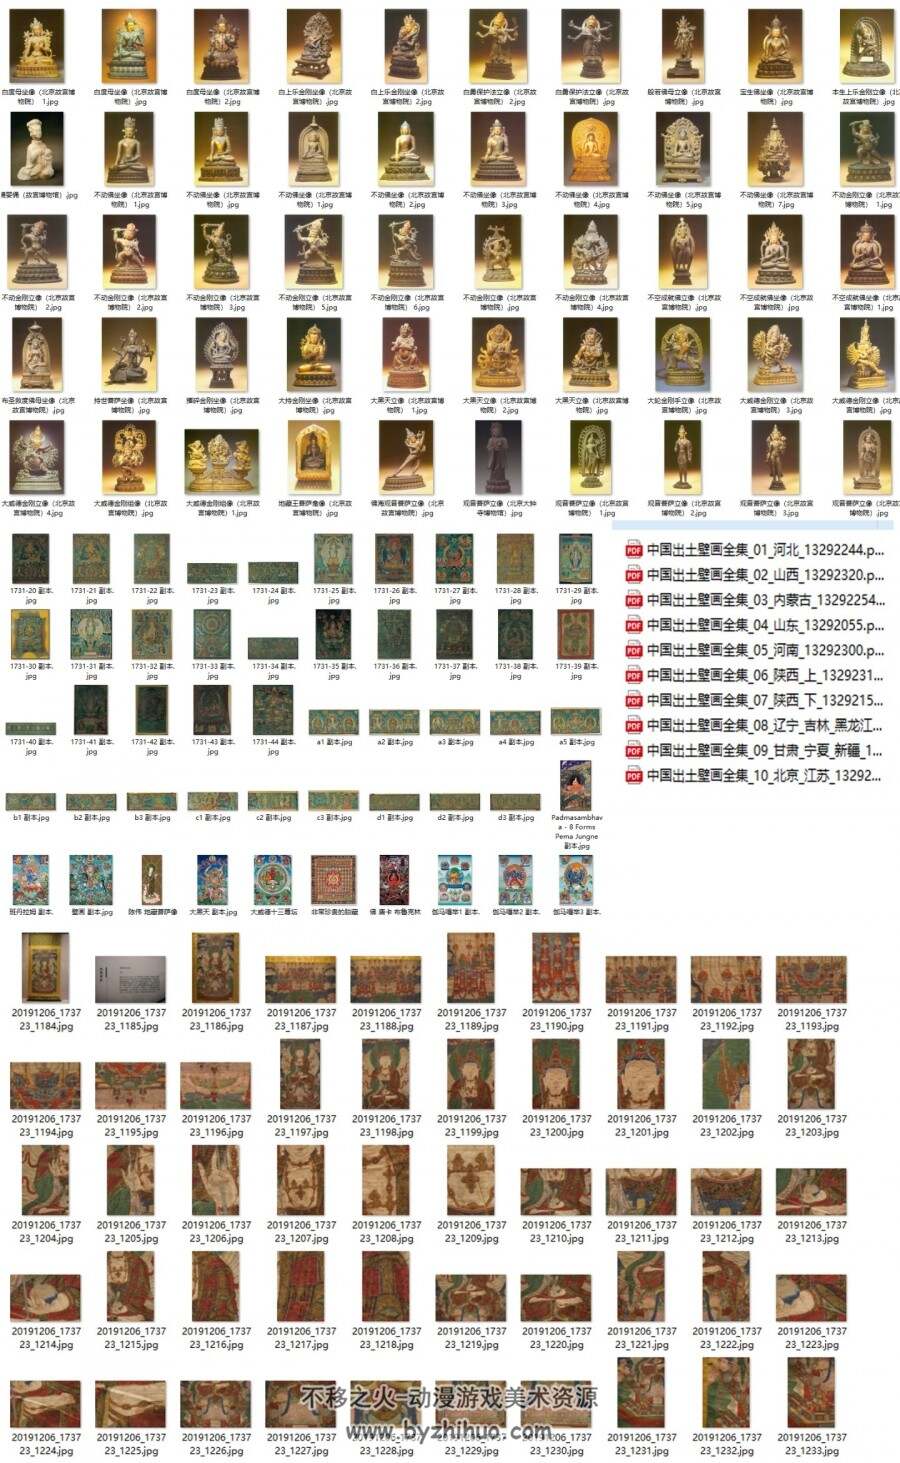 很全面的佛像壁画雕塑佛卡等合集 百度网盘分享赏析参考